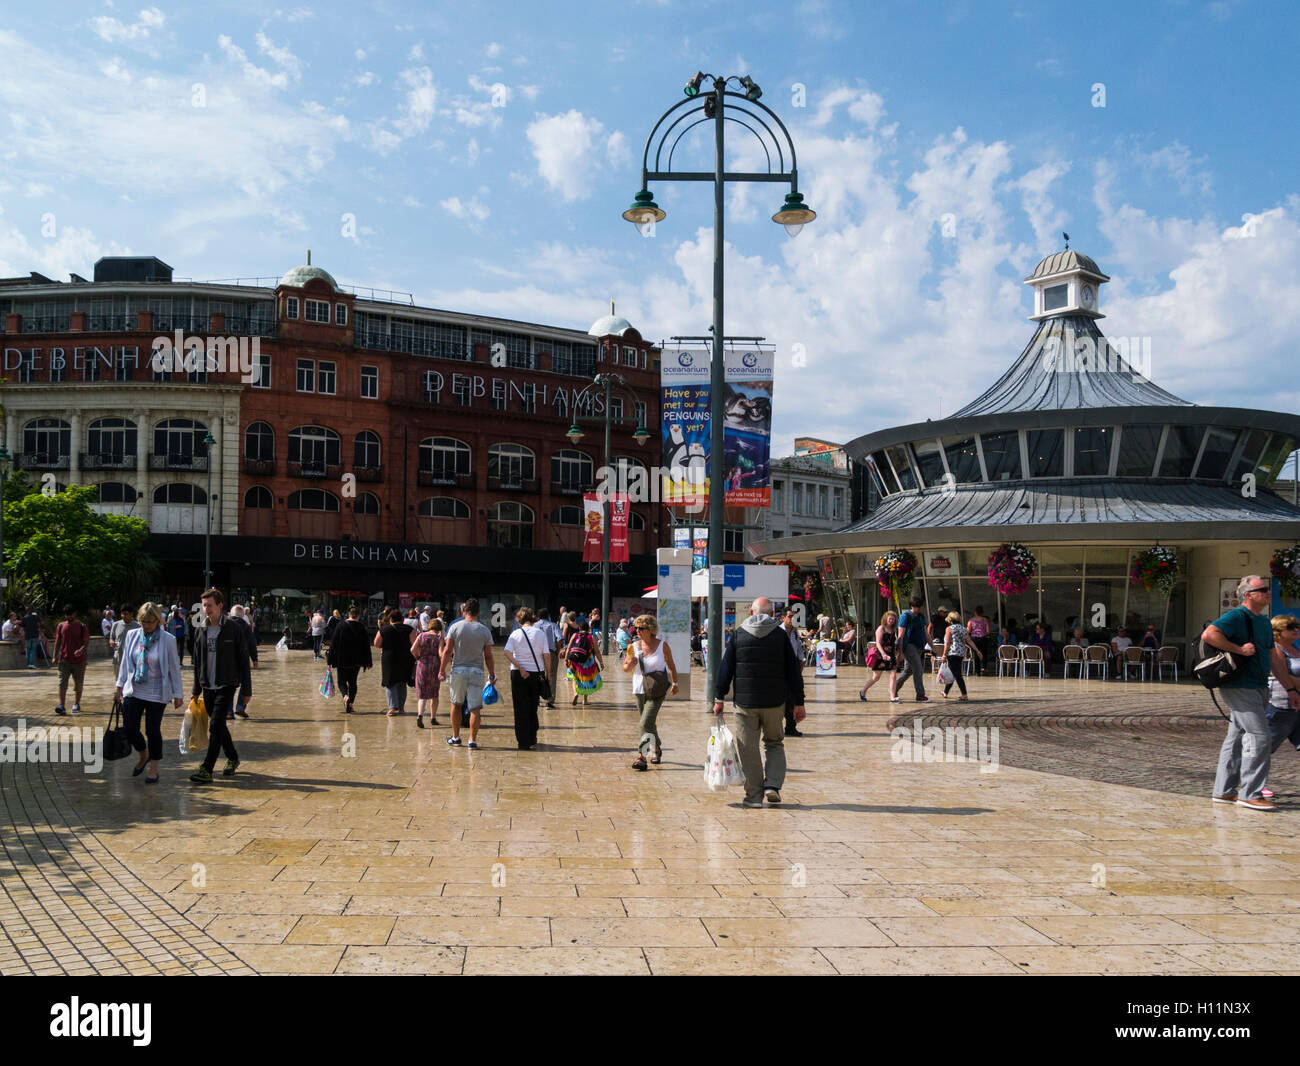 La piazza pedonale del centro città square Bournemouth Dorset England Regno Unito con il negozio Debenhams in background Foto Stock